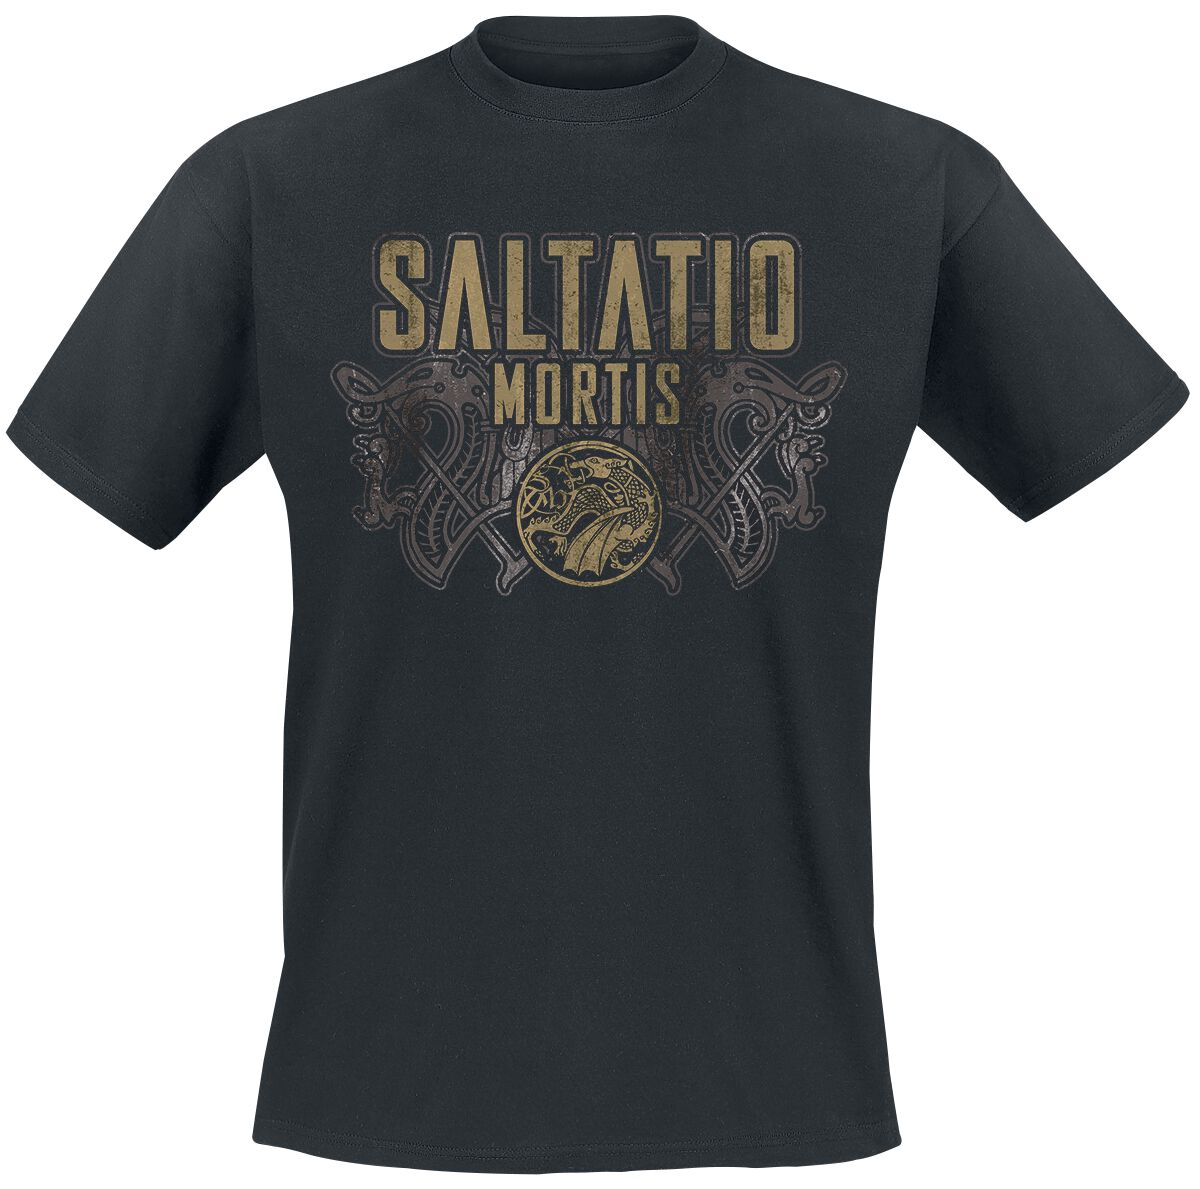 Saltatio Mortis T-Shirt - Viking Logo - XXL bis 3XL - für Männer - Größe 3XL - schwarz  - Lizenziertes Merchandise!